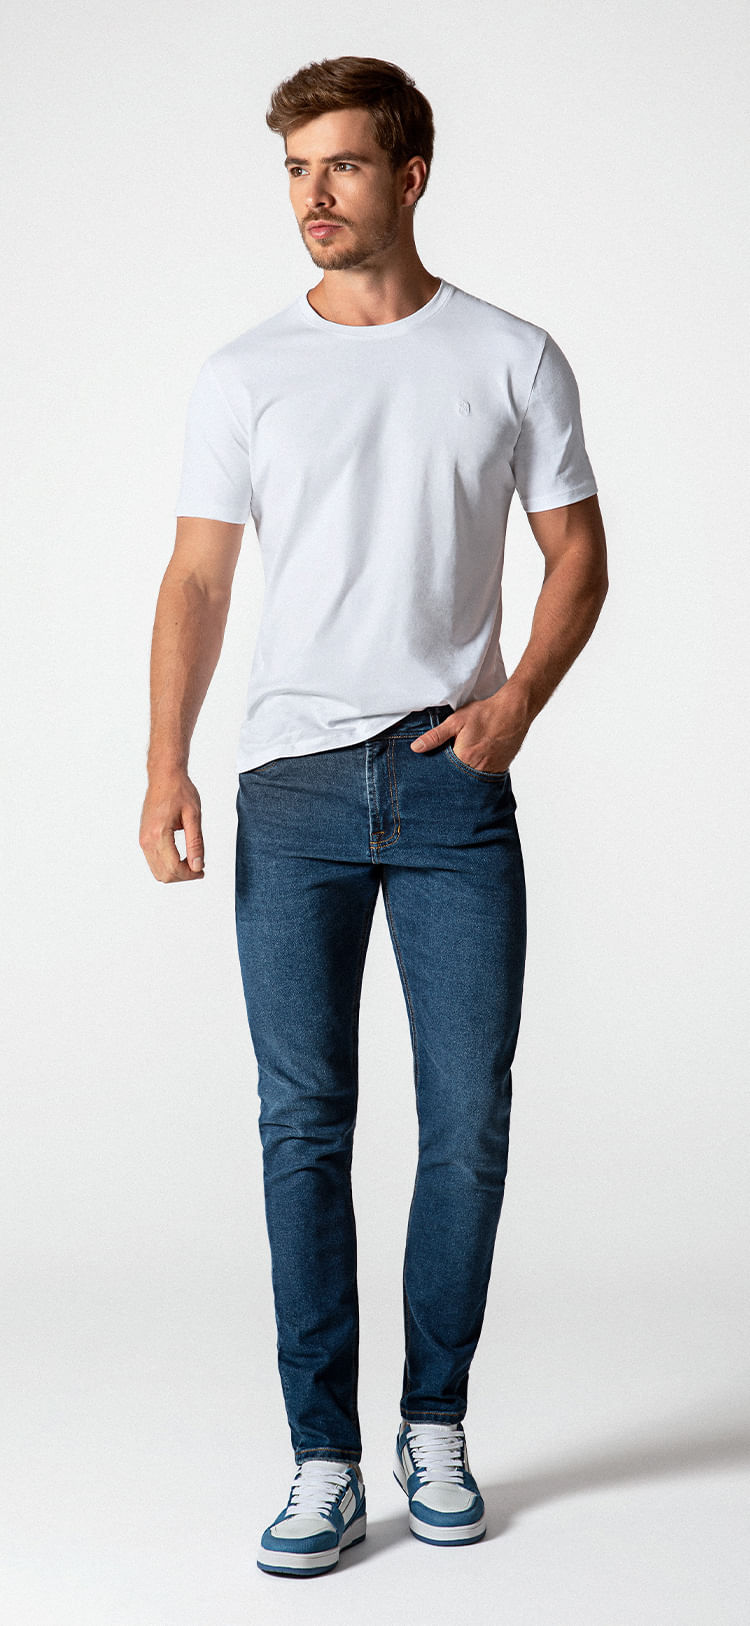 Modelo hombre vistiendo camisa blanca y jean de la marca STUDIO F MAN